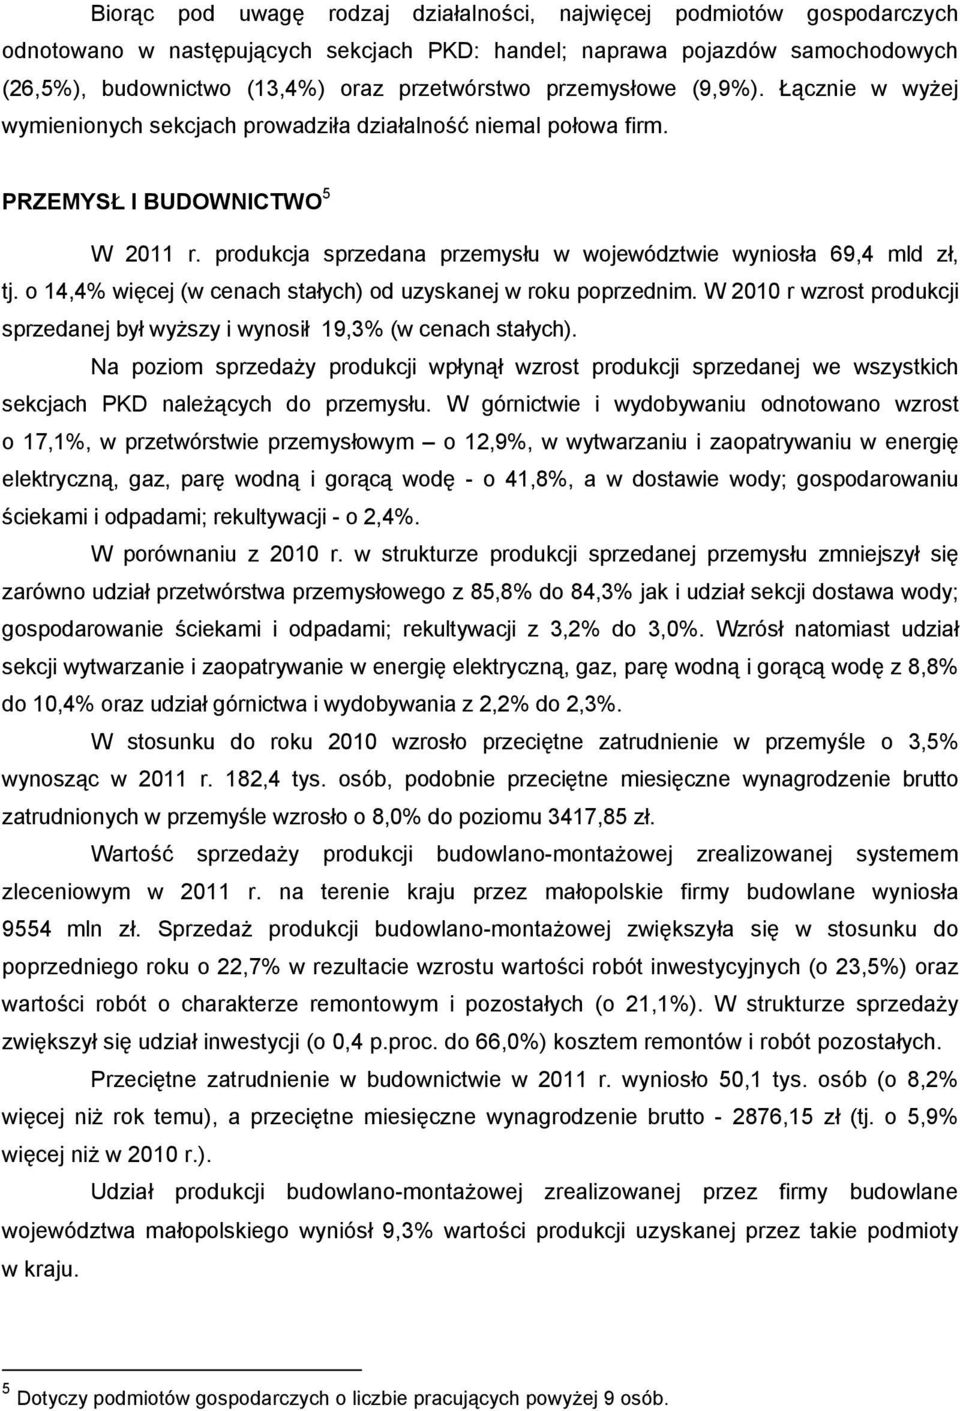 produkcja sprzedana przemysłu w województwie wyniosła 69,4 mld zł, tj. o 14,4% więcej (w cenach stałych) od uzyskanej w roku poprzednim.